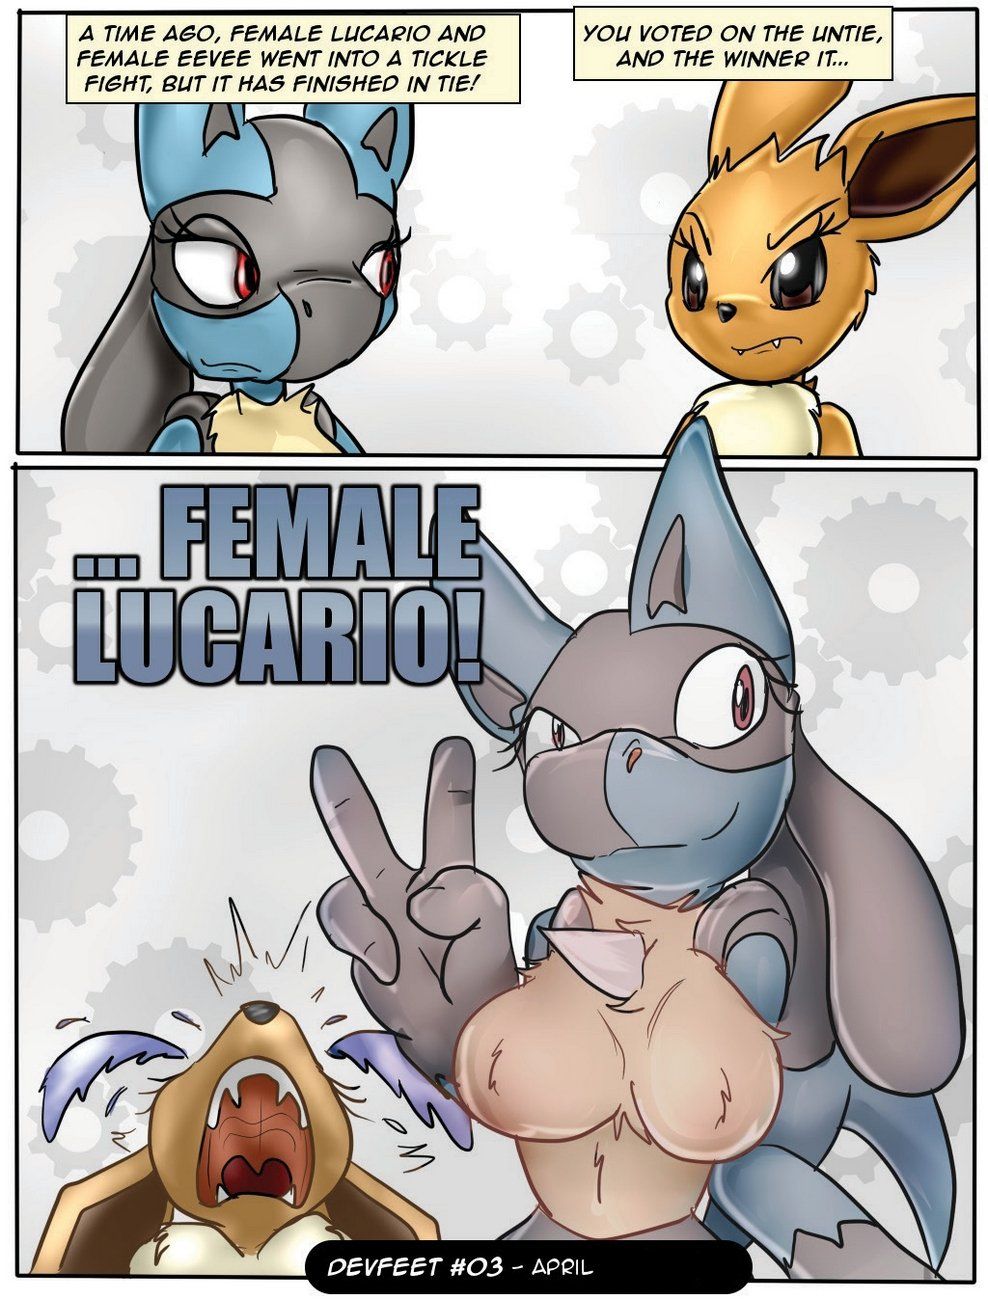 Female lucario